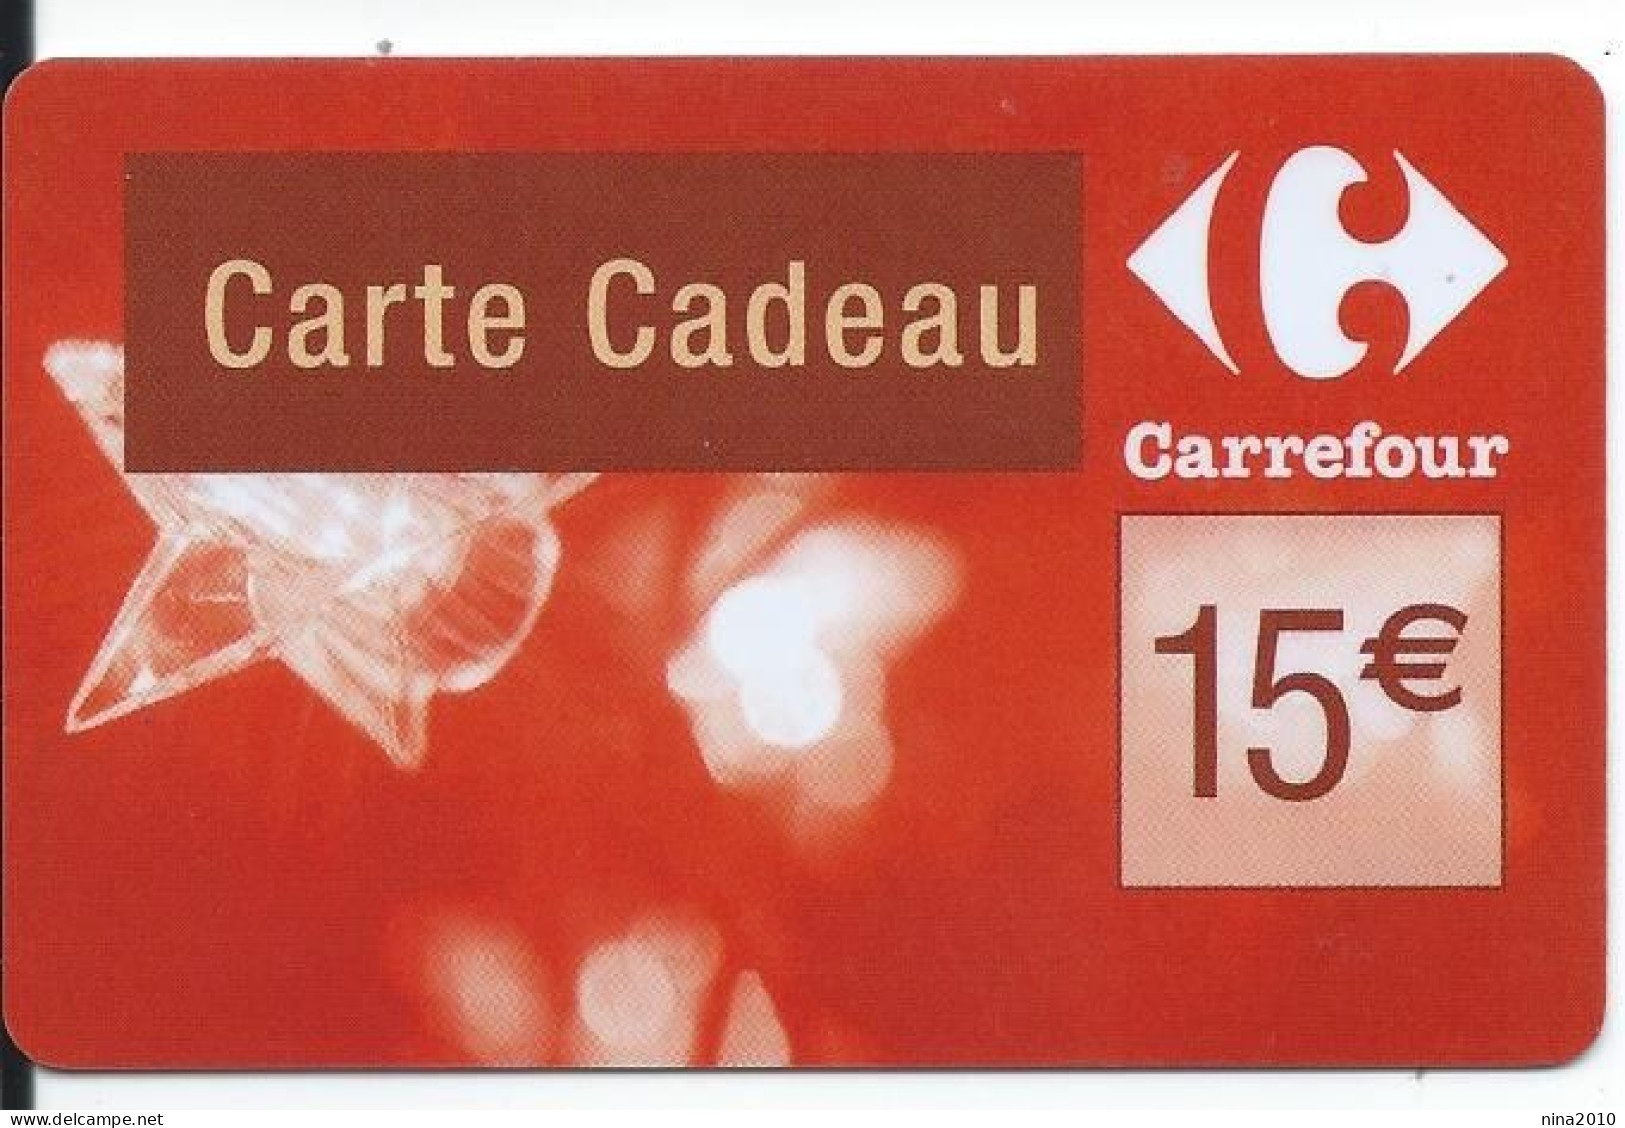 Carte Cadeau - Carrefour Verso 31/12/2009  - VOIR DESCRIPTION Avant Enchères -  GIFT CARD /GESCHENKKARTE - Tarjetas De Regalo